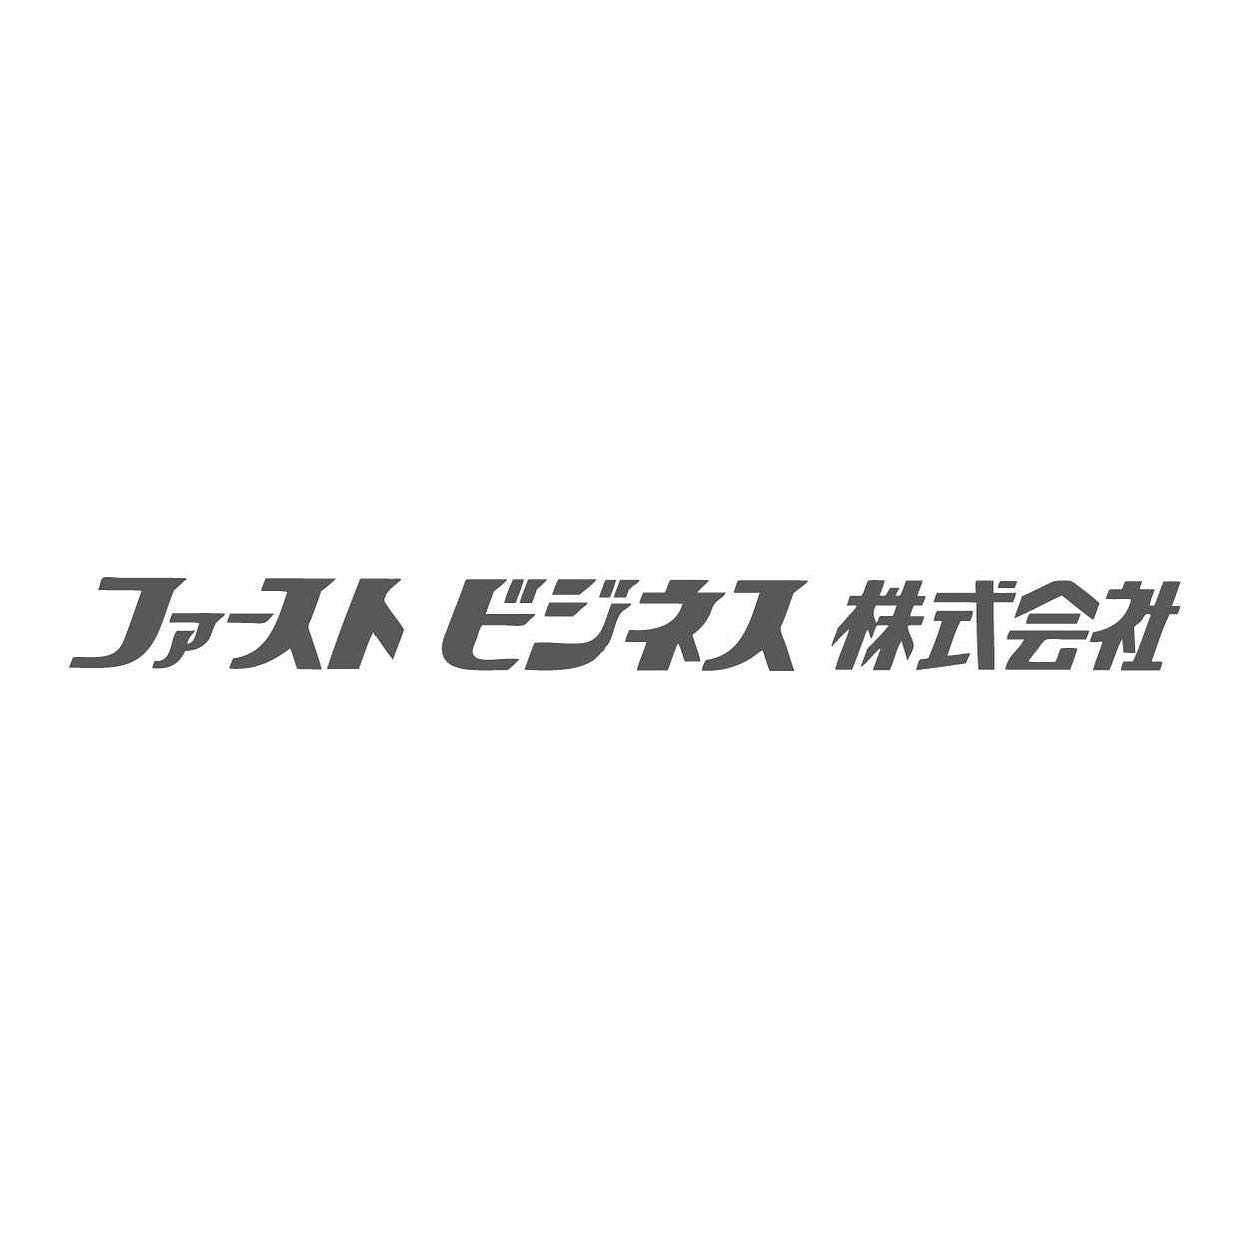 金田喜稔サッカークリニック2022協賛企業案内-ファーストビジネス(株)様